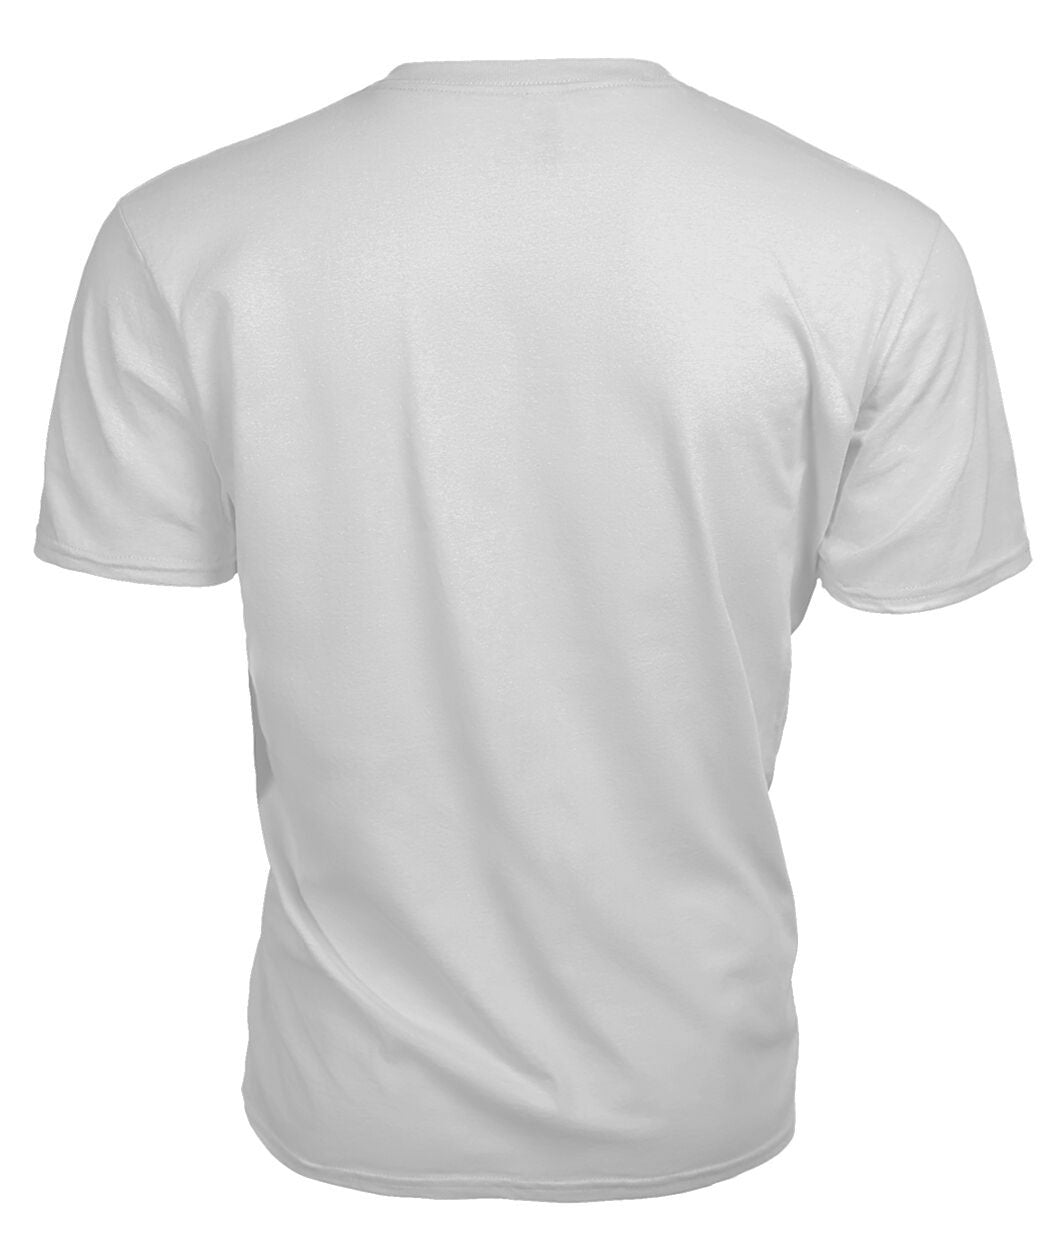 Armstrong Modern Tartan Crest 2D T-shirt - Blood Runs Through My Veins Style